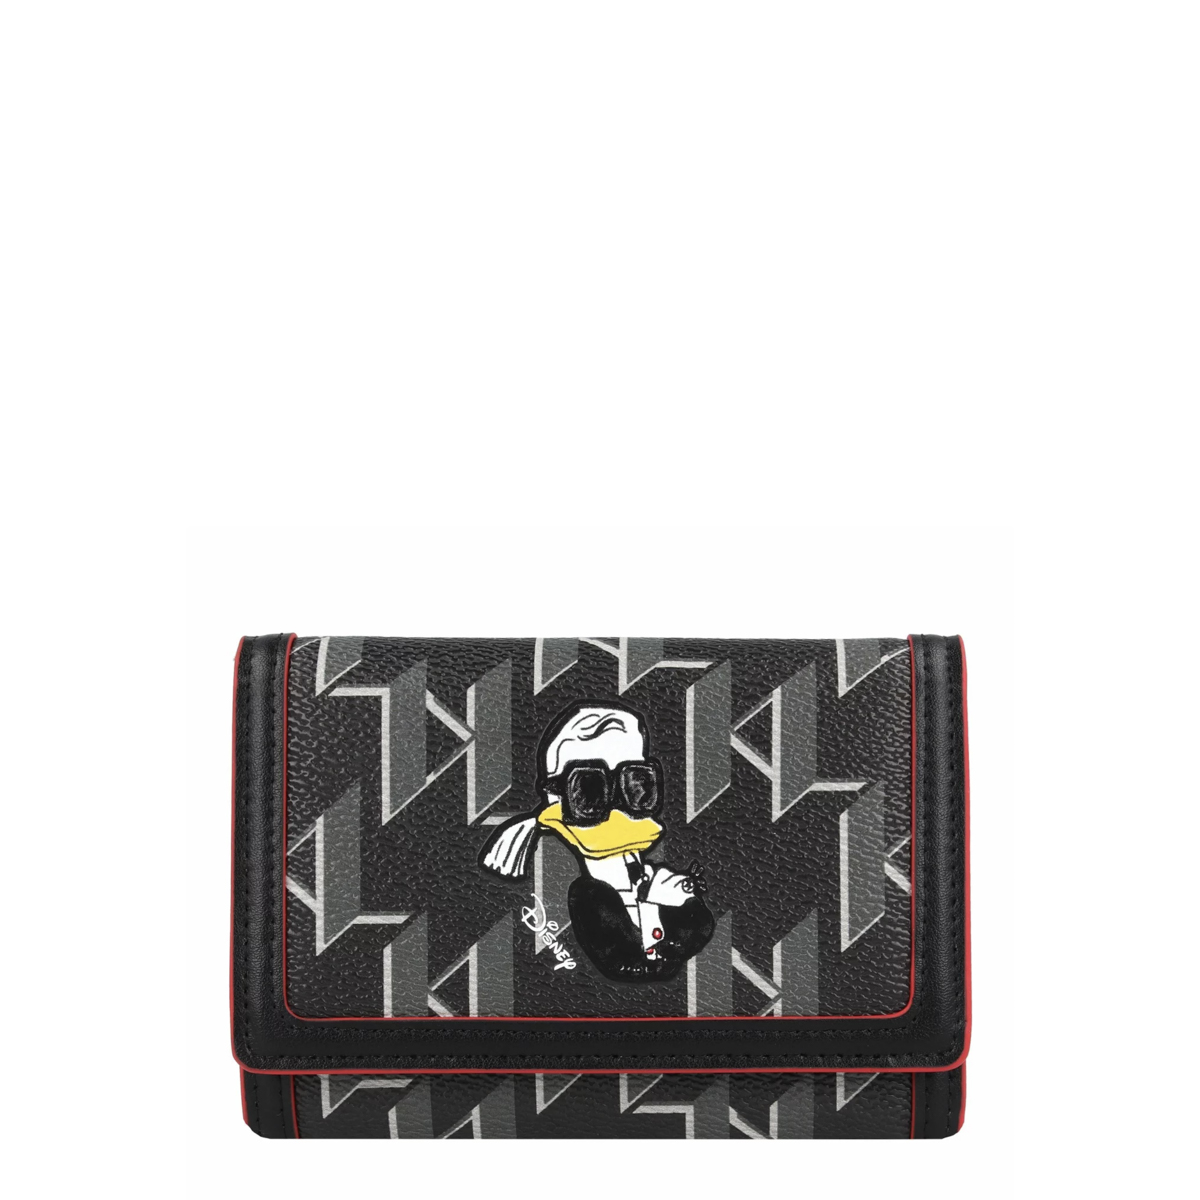 Louis Vuitton Zipper Wallet purse Carrera purse